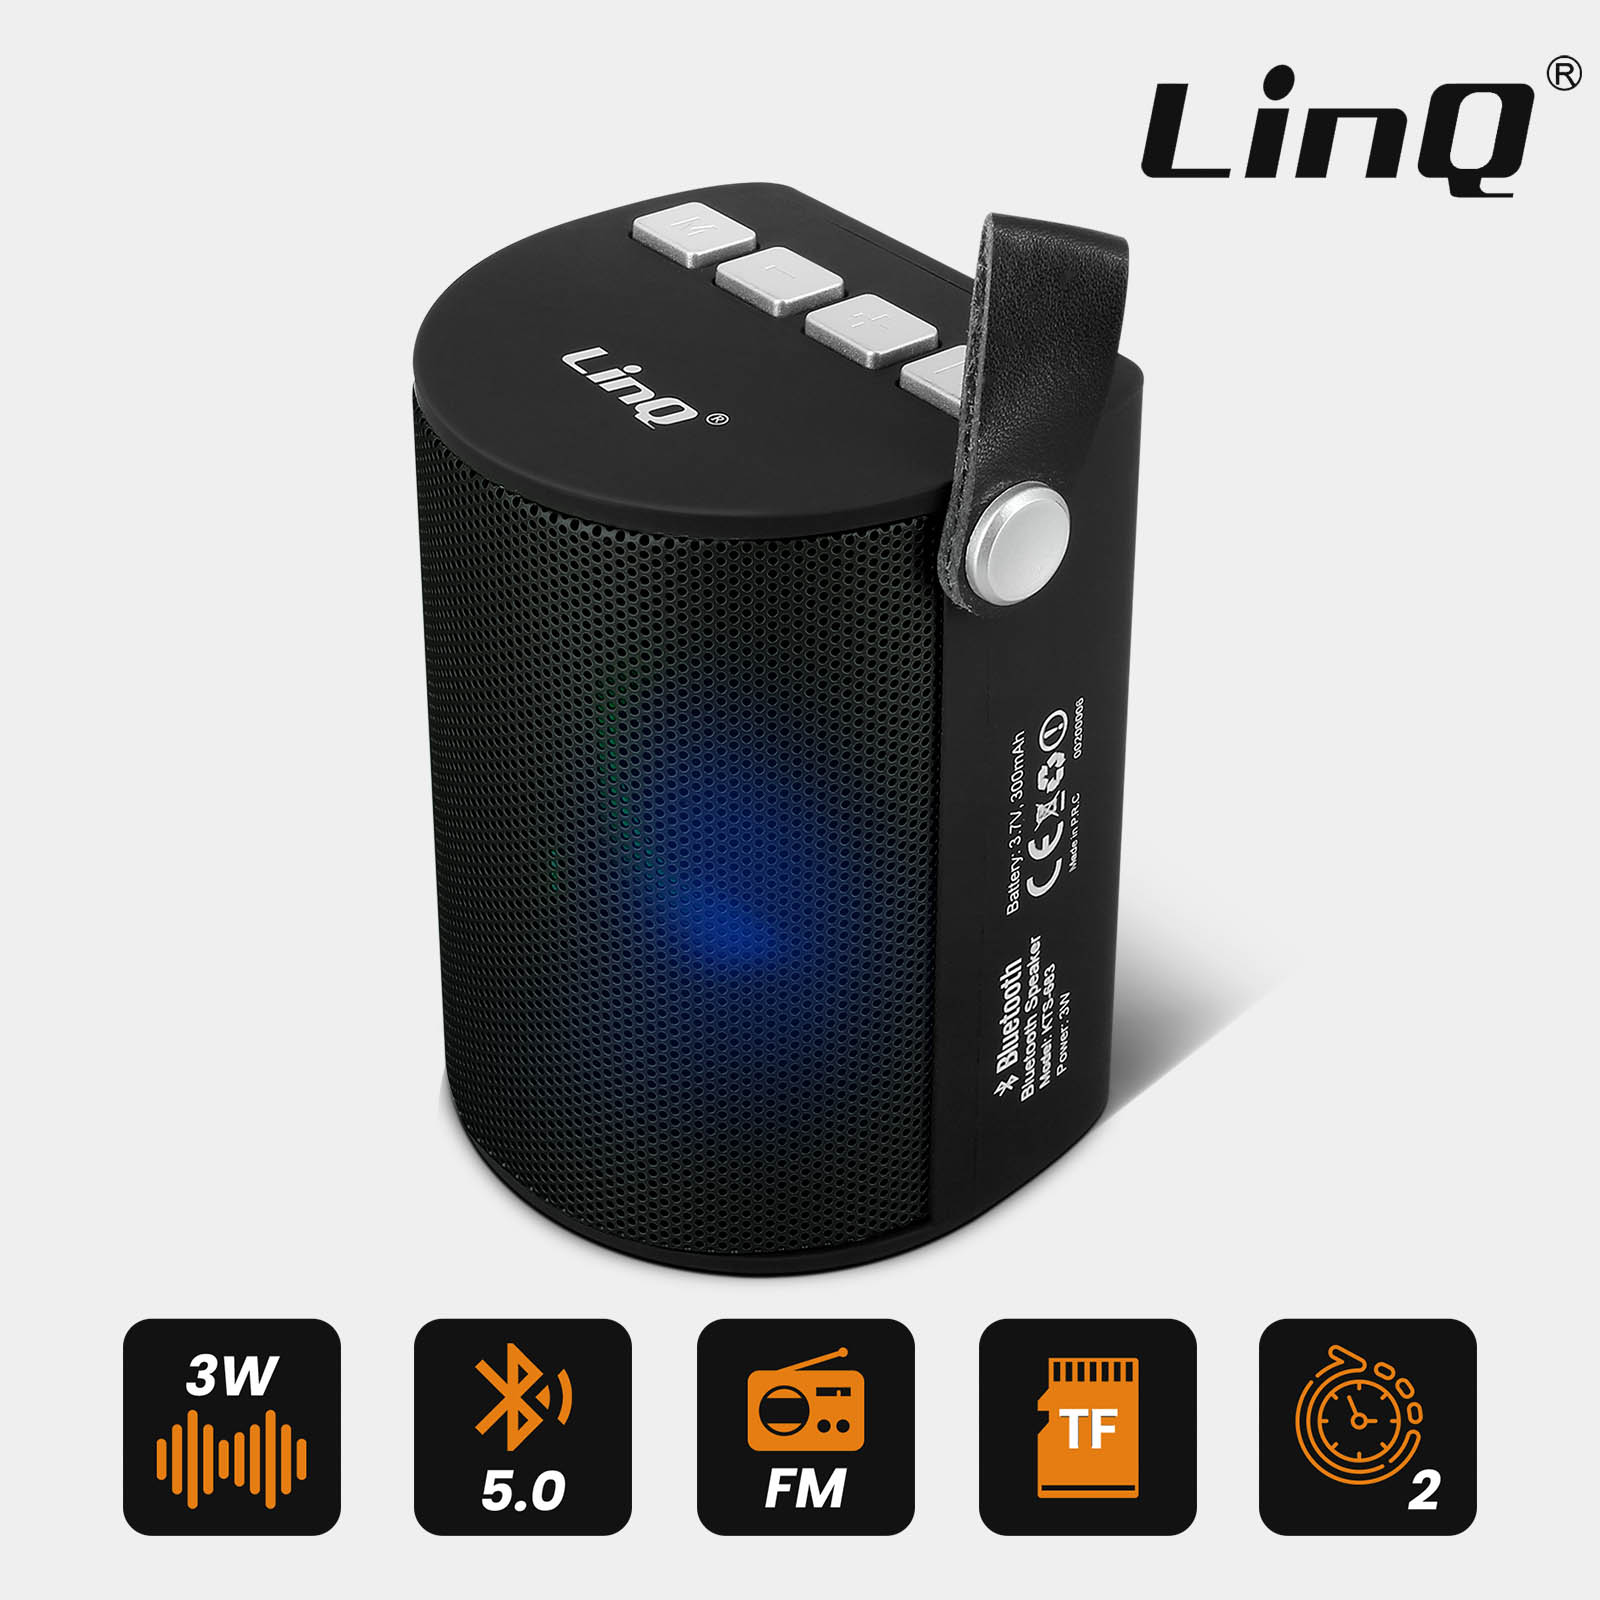 Enceinte Bluetooth Sans-fil, Radio FM à LED, Son Stéréo puissant 6W LinQ -  Noir - Français